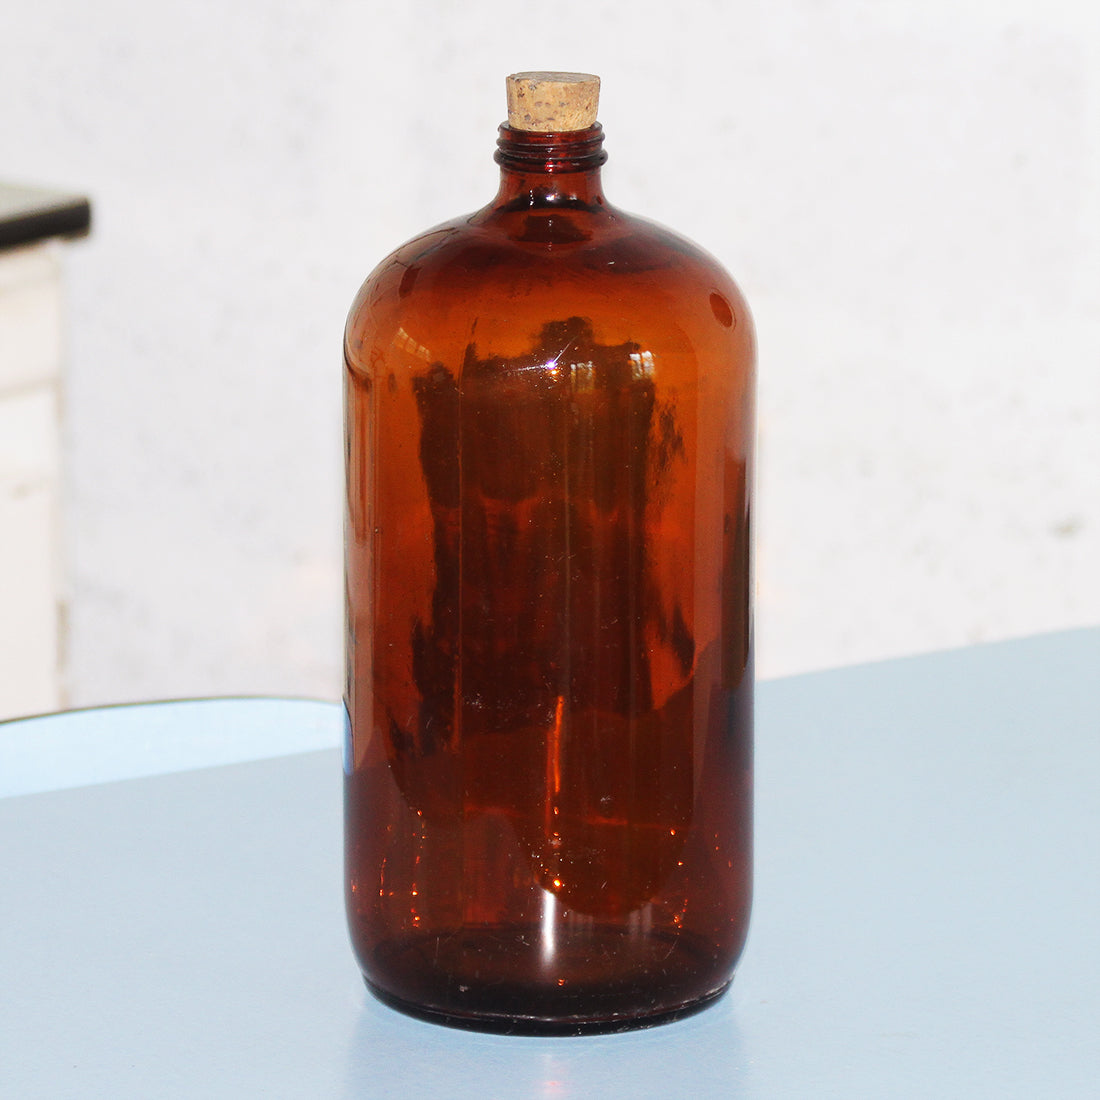 Grand flacon de pharmacie vide vintage en verre ambré 2500 ml